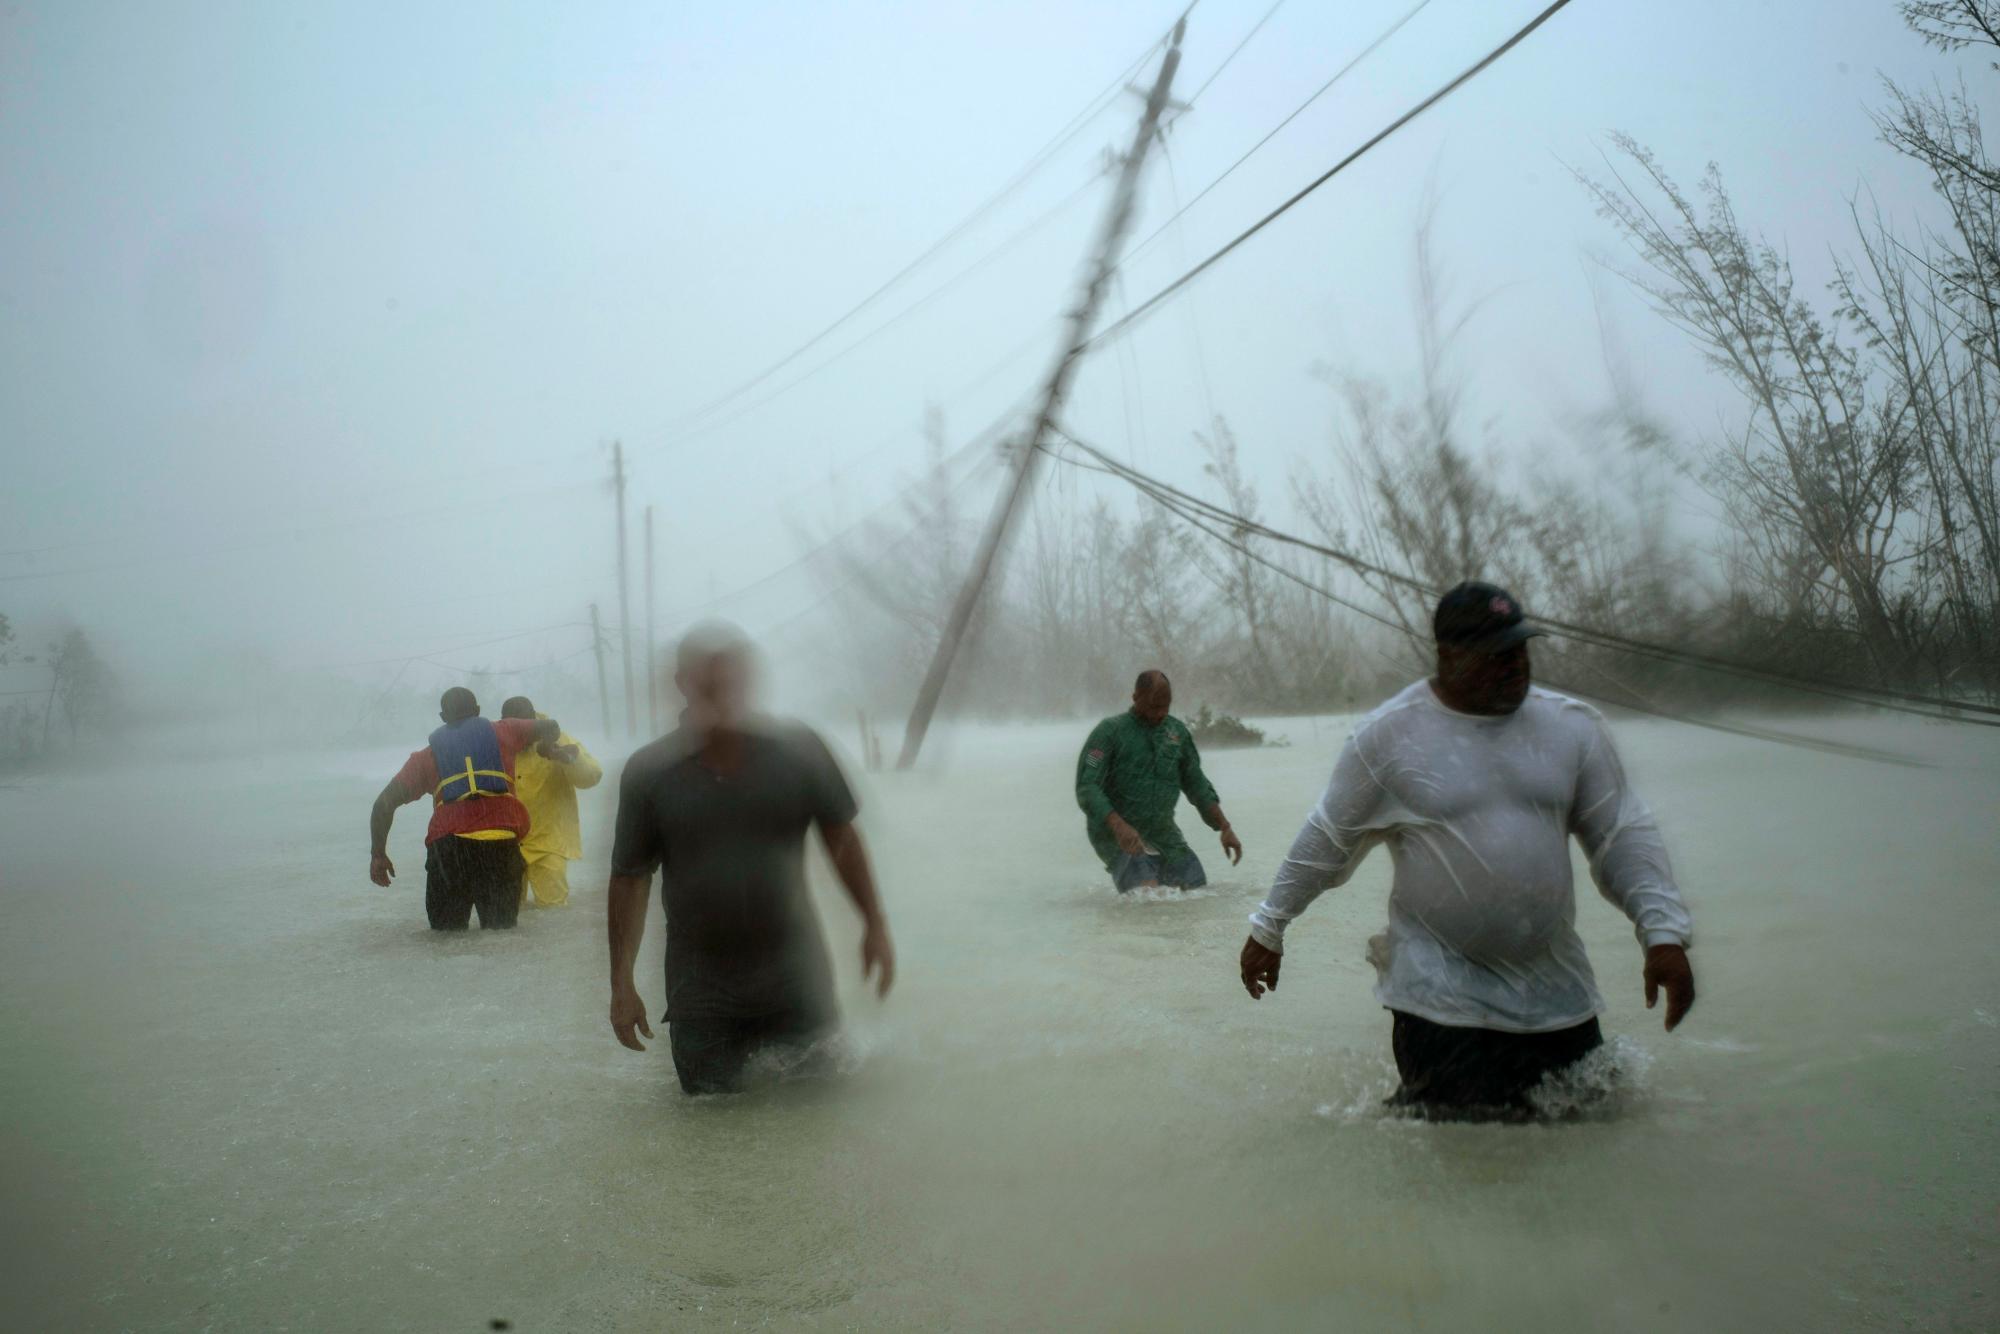 Los voluntarios caminan por un camino inundado contra el viento y la lluvia provocados por el huracán Dorian para rescatar a las familias cerca del puente Causarina en Freeport, Gran Bahama, Bahamas, el 3 de septiembre de 2019.